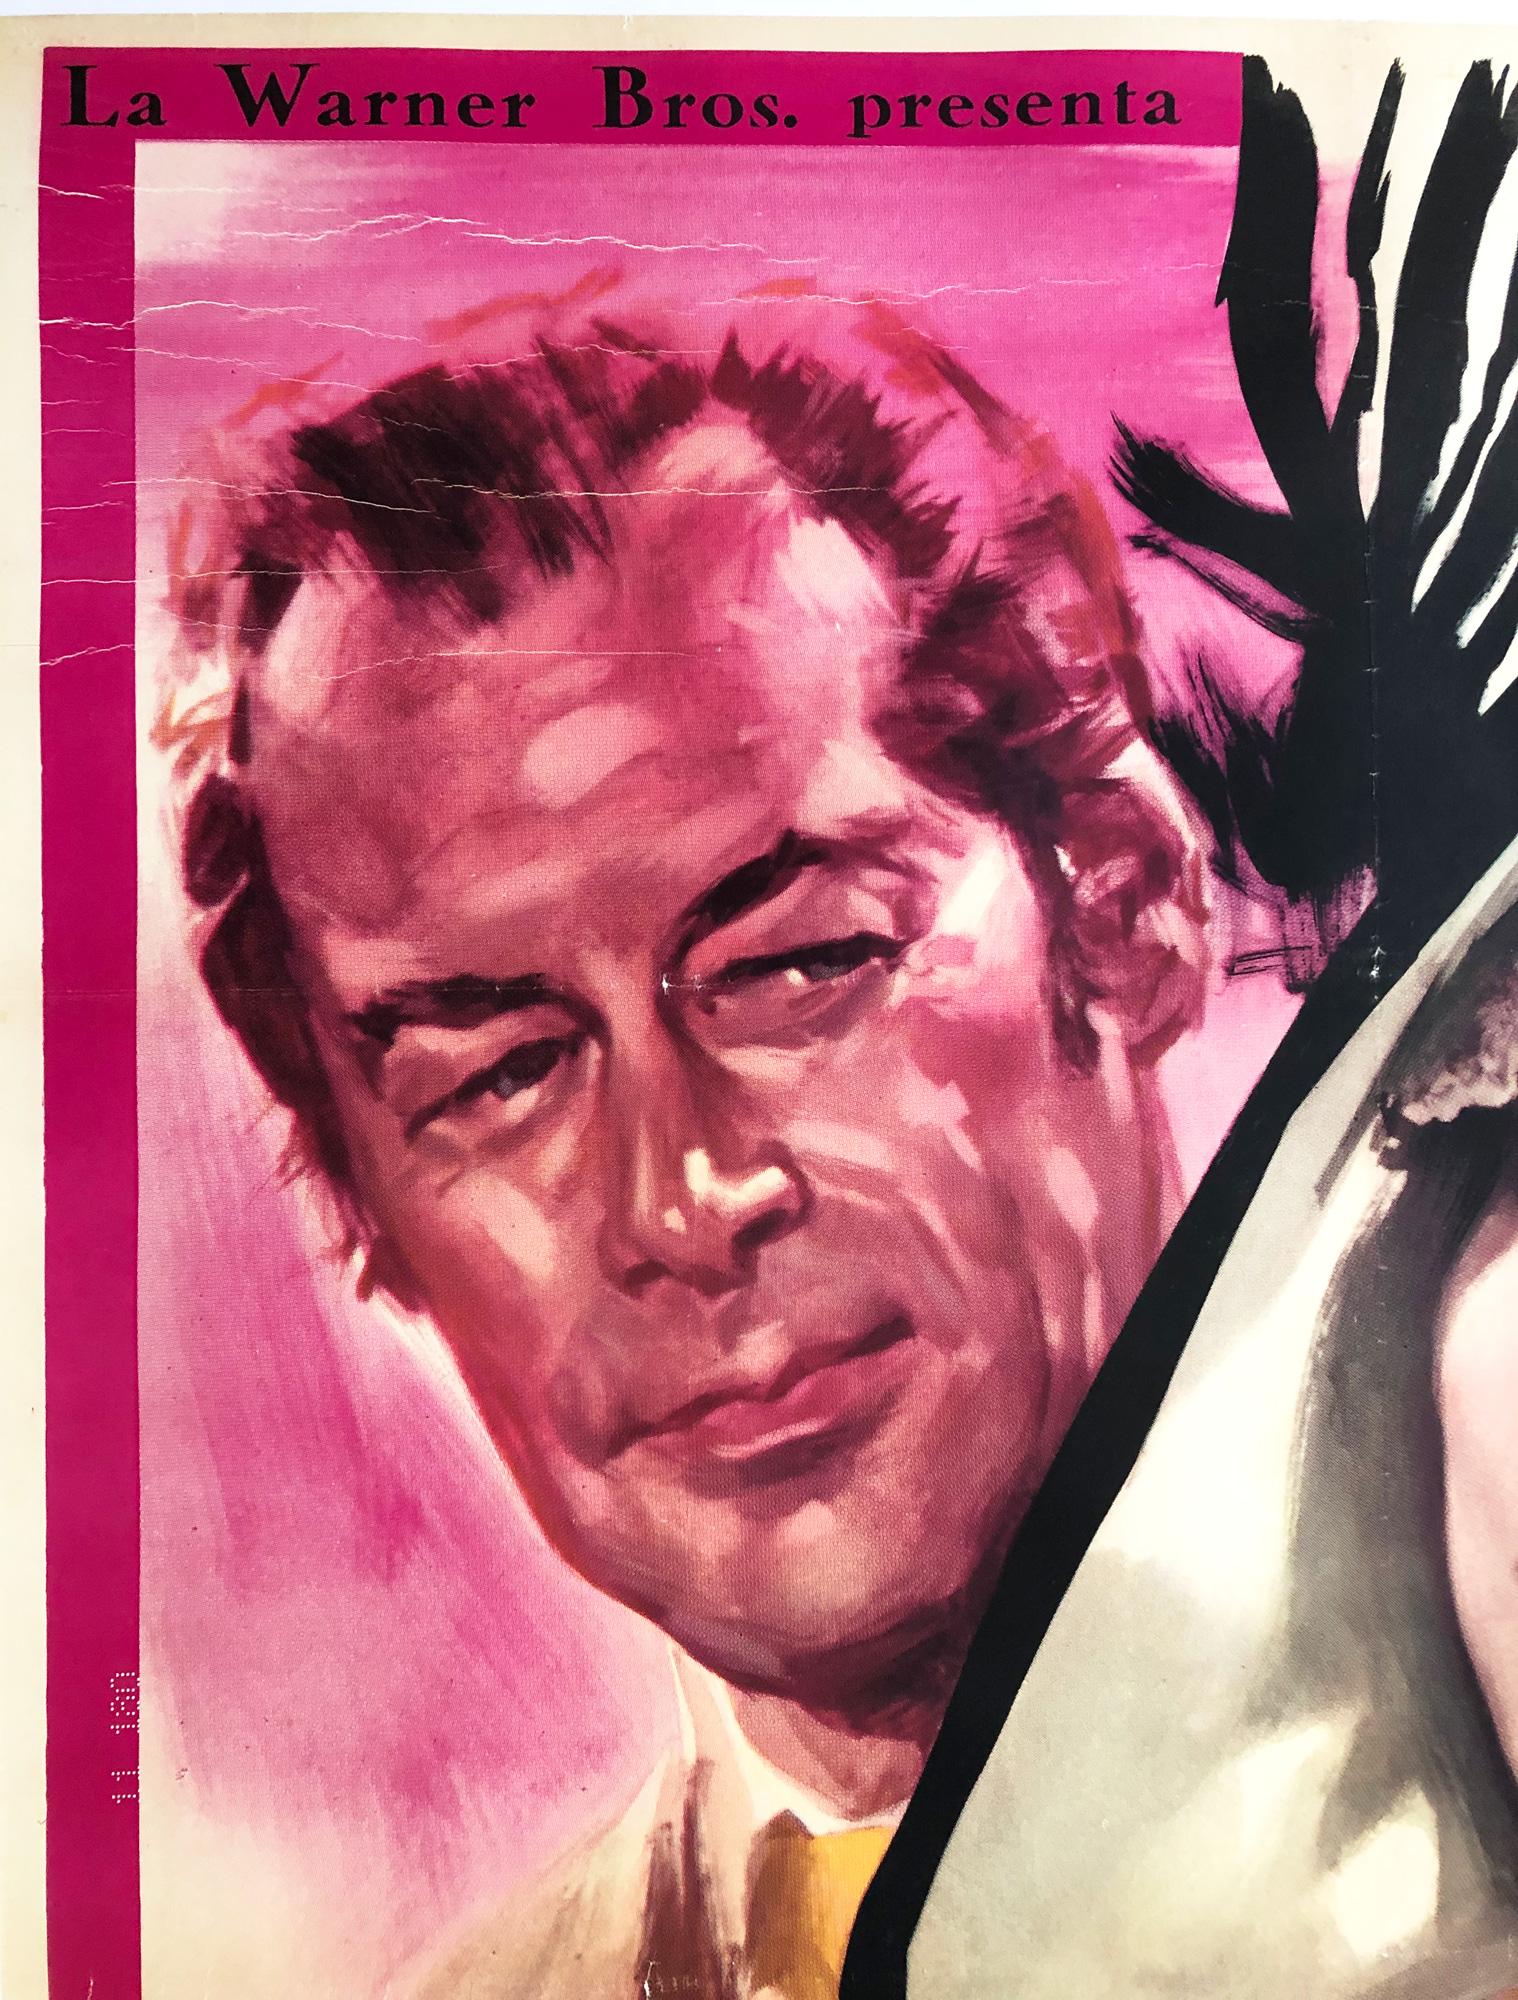 Großes italienisches 2 Foglio Filmplakat für den Filmklassiker My Fair Lady, mit Audrey Hepburn und Rex Harrison in den Hauptrollen. Aus dem ersten Jahr der Veröffentlichung des Films in Italien.

Professionell mit Leinen hinterlegt. In